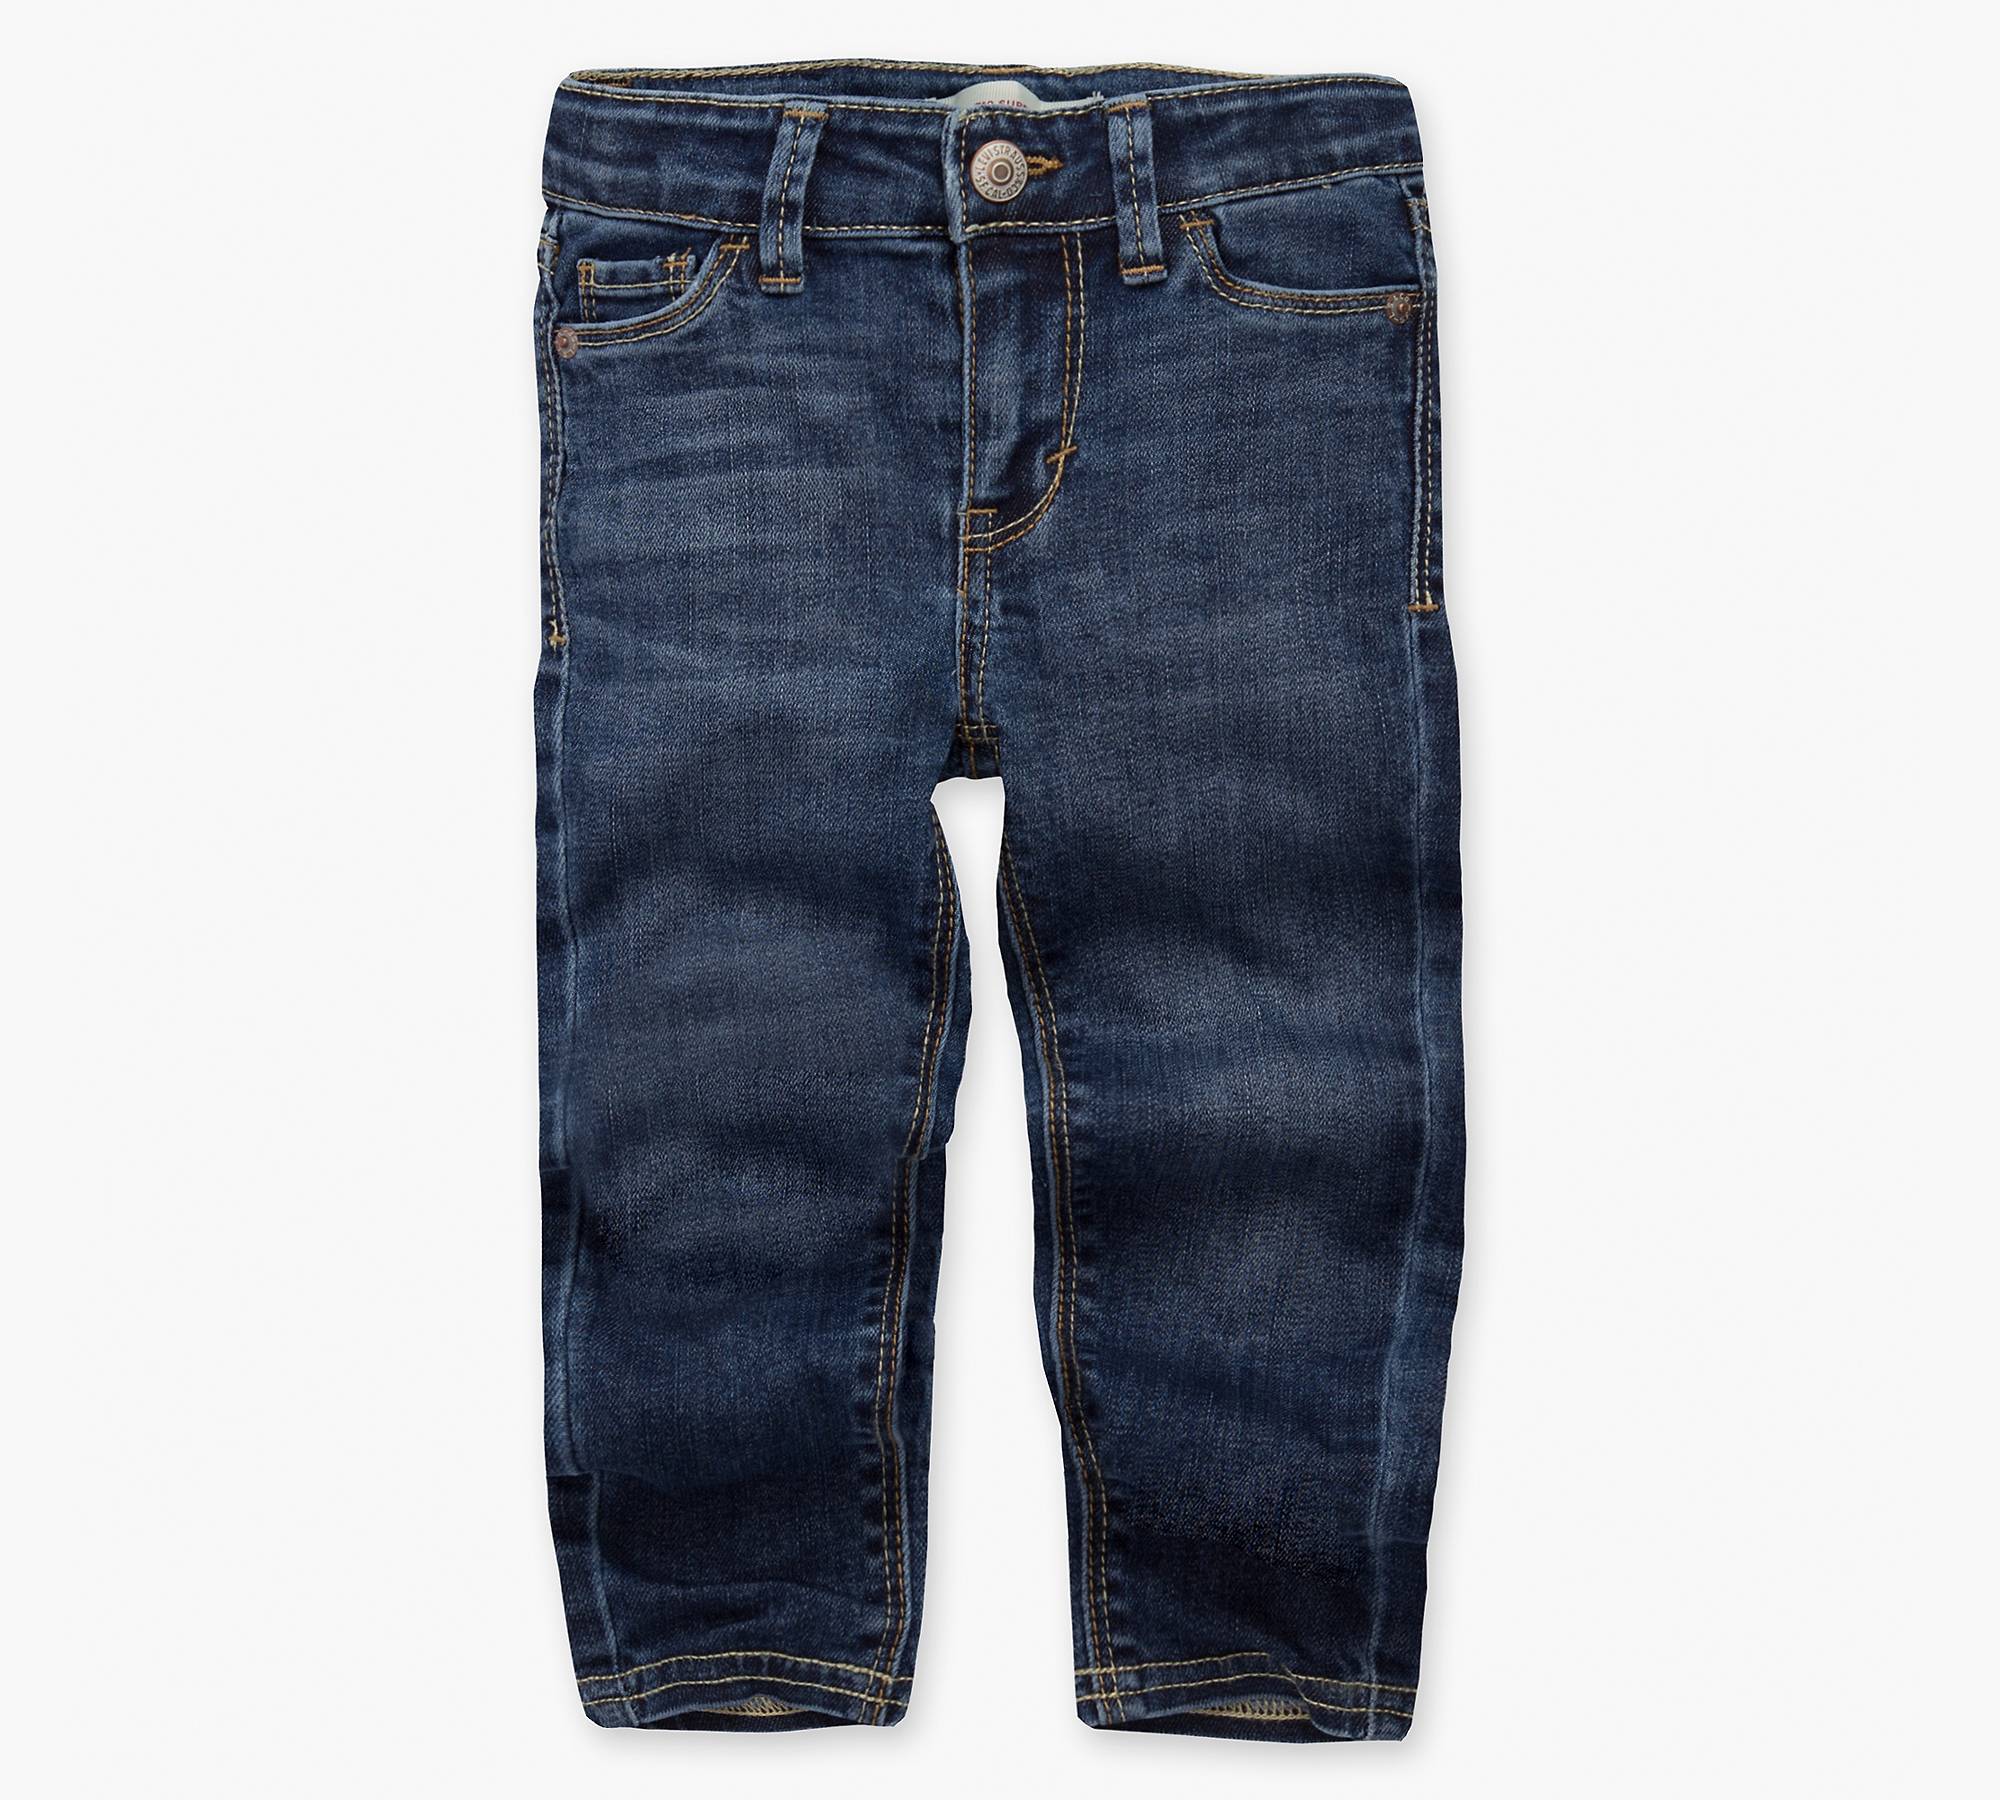 710 Super Skinny Back Pocket Toddler Girls Jeans 2T-4T 1